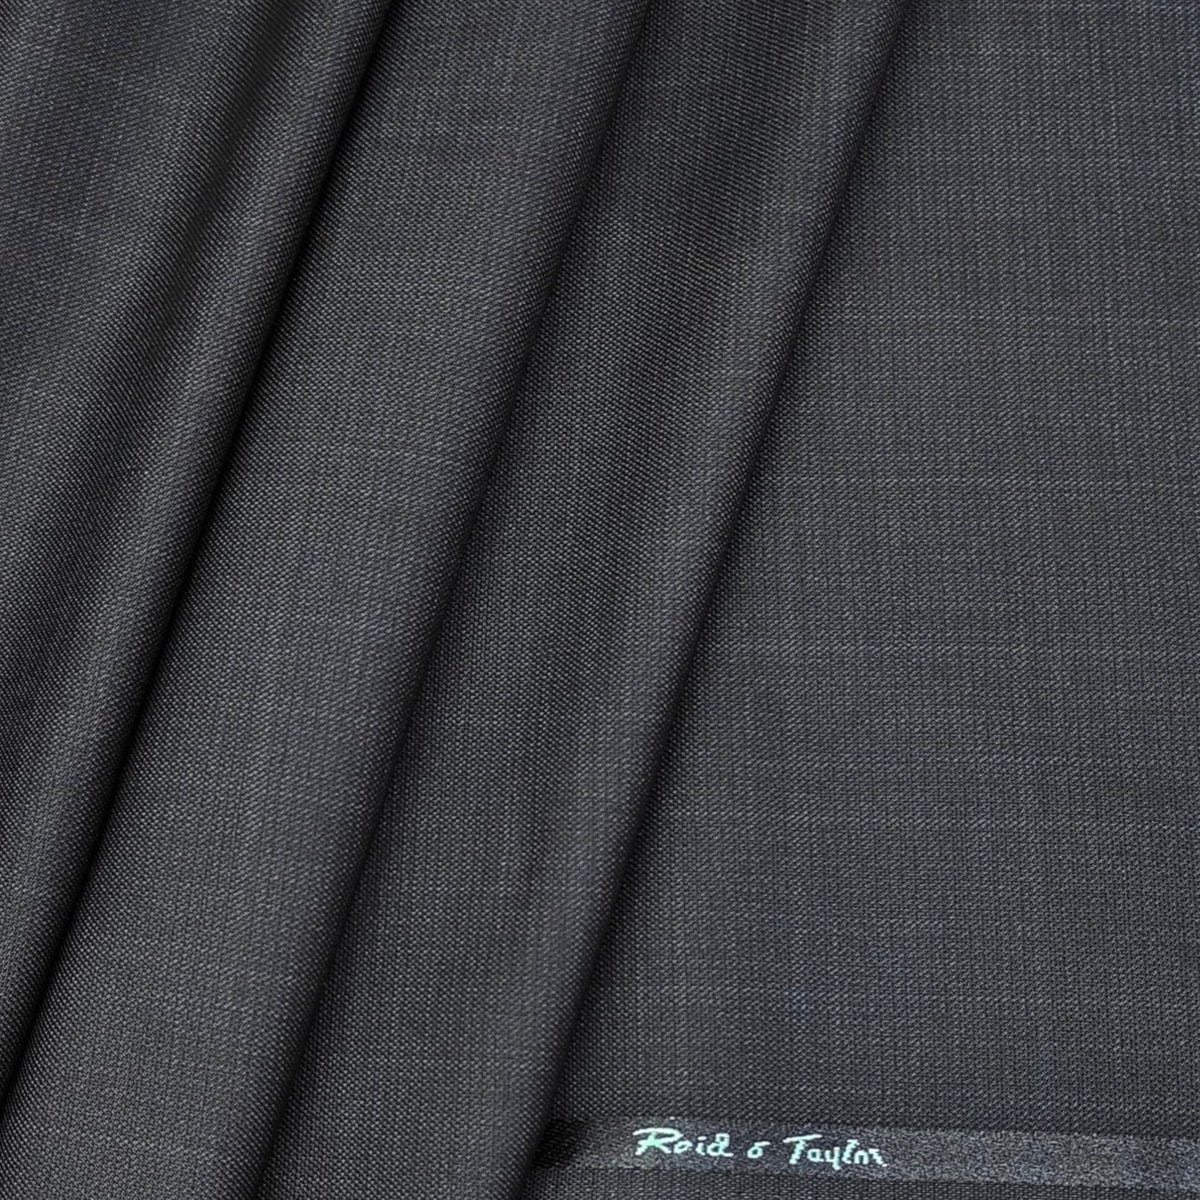 Reid n Taylor Men's Premium check unstitched Pant Fabric (Black)